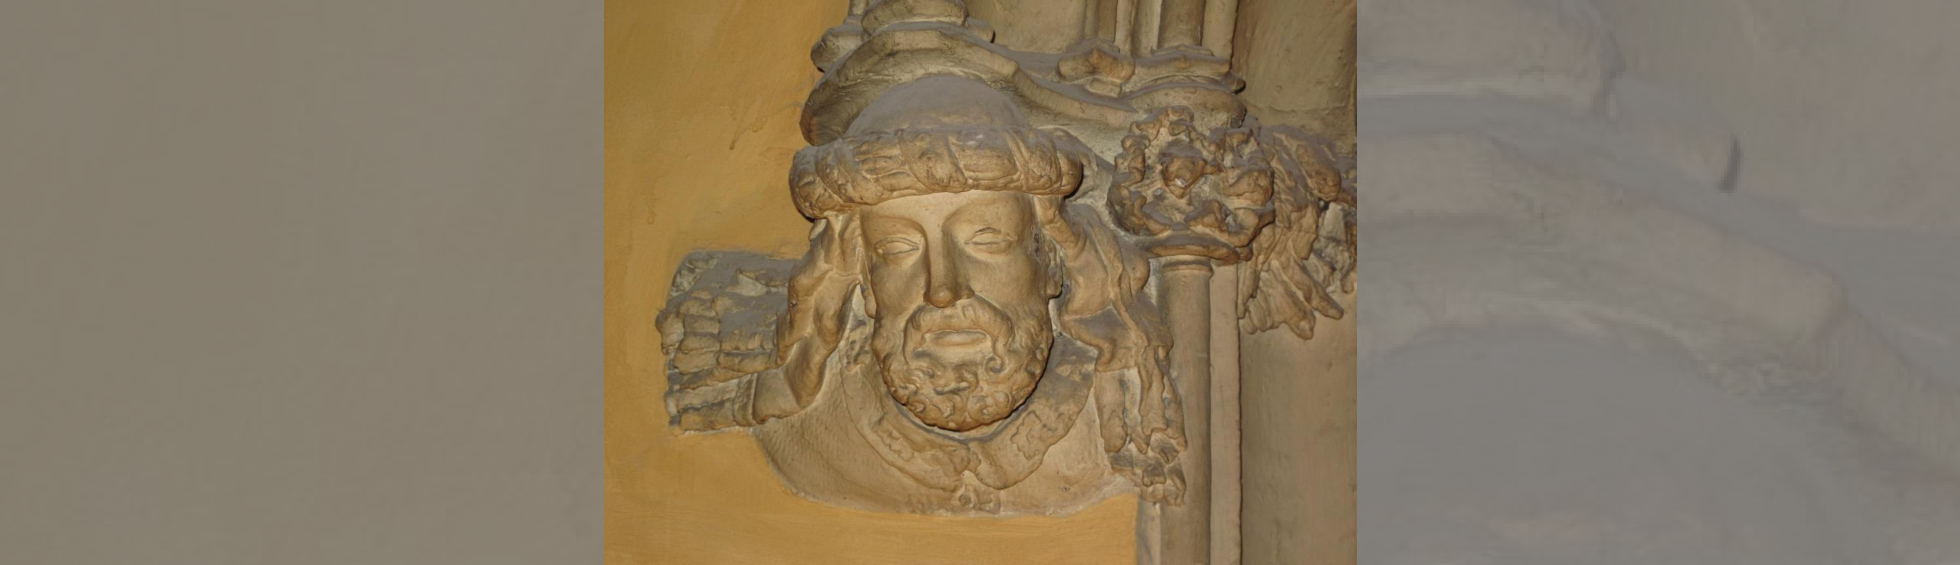 Tête décorative de Bernat Xanxo à la base d'un encadrement de porte côté gauche